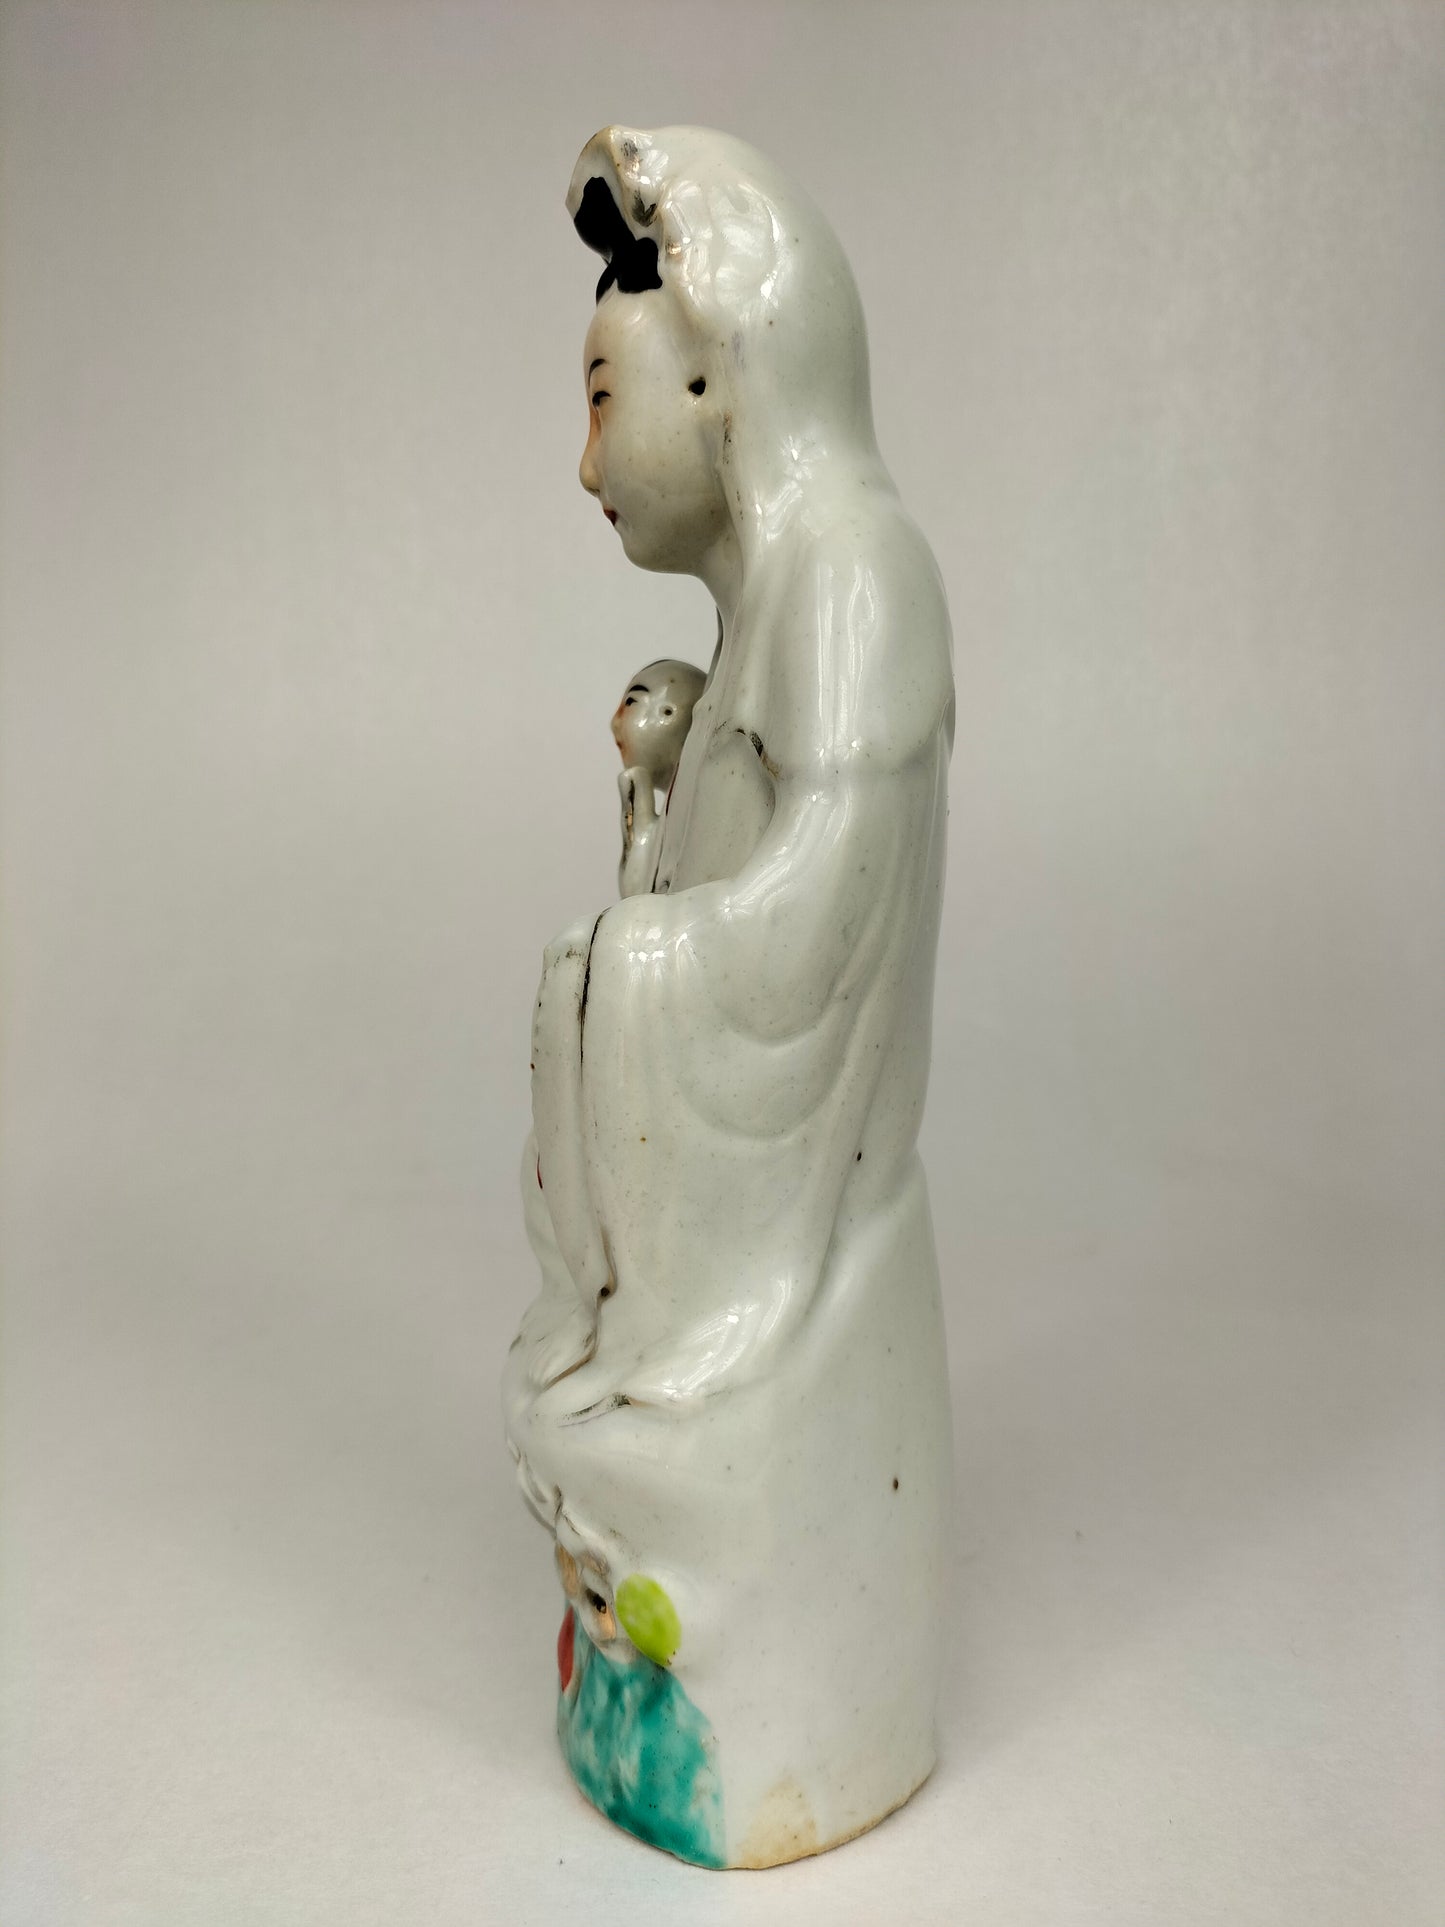 تمثال صيني عتيق لكوانيين // فترة الجمهورية (1912-1949)